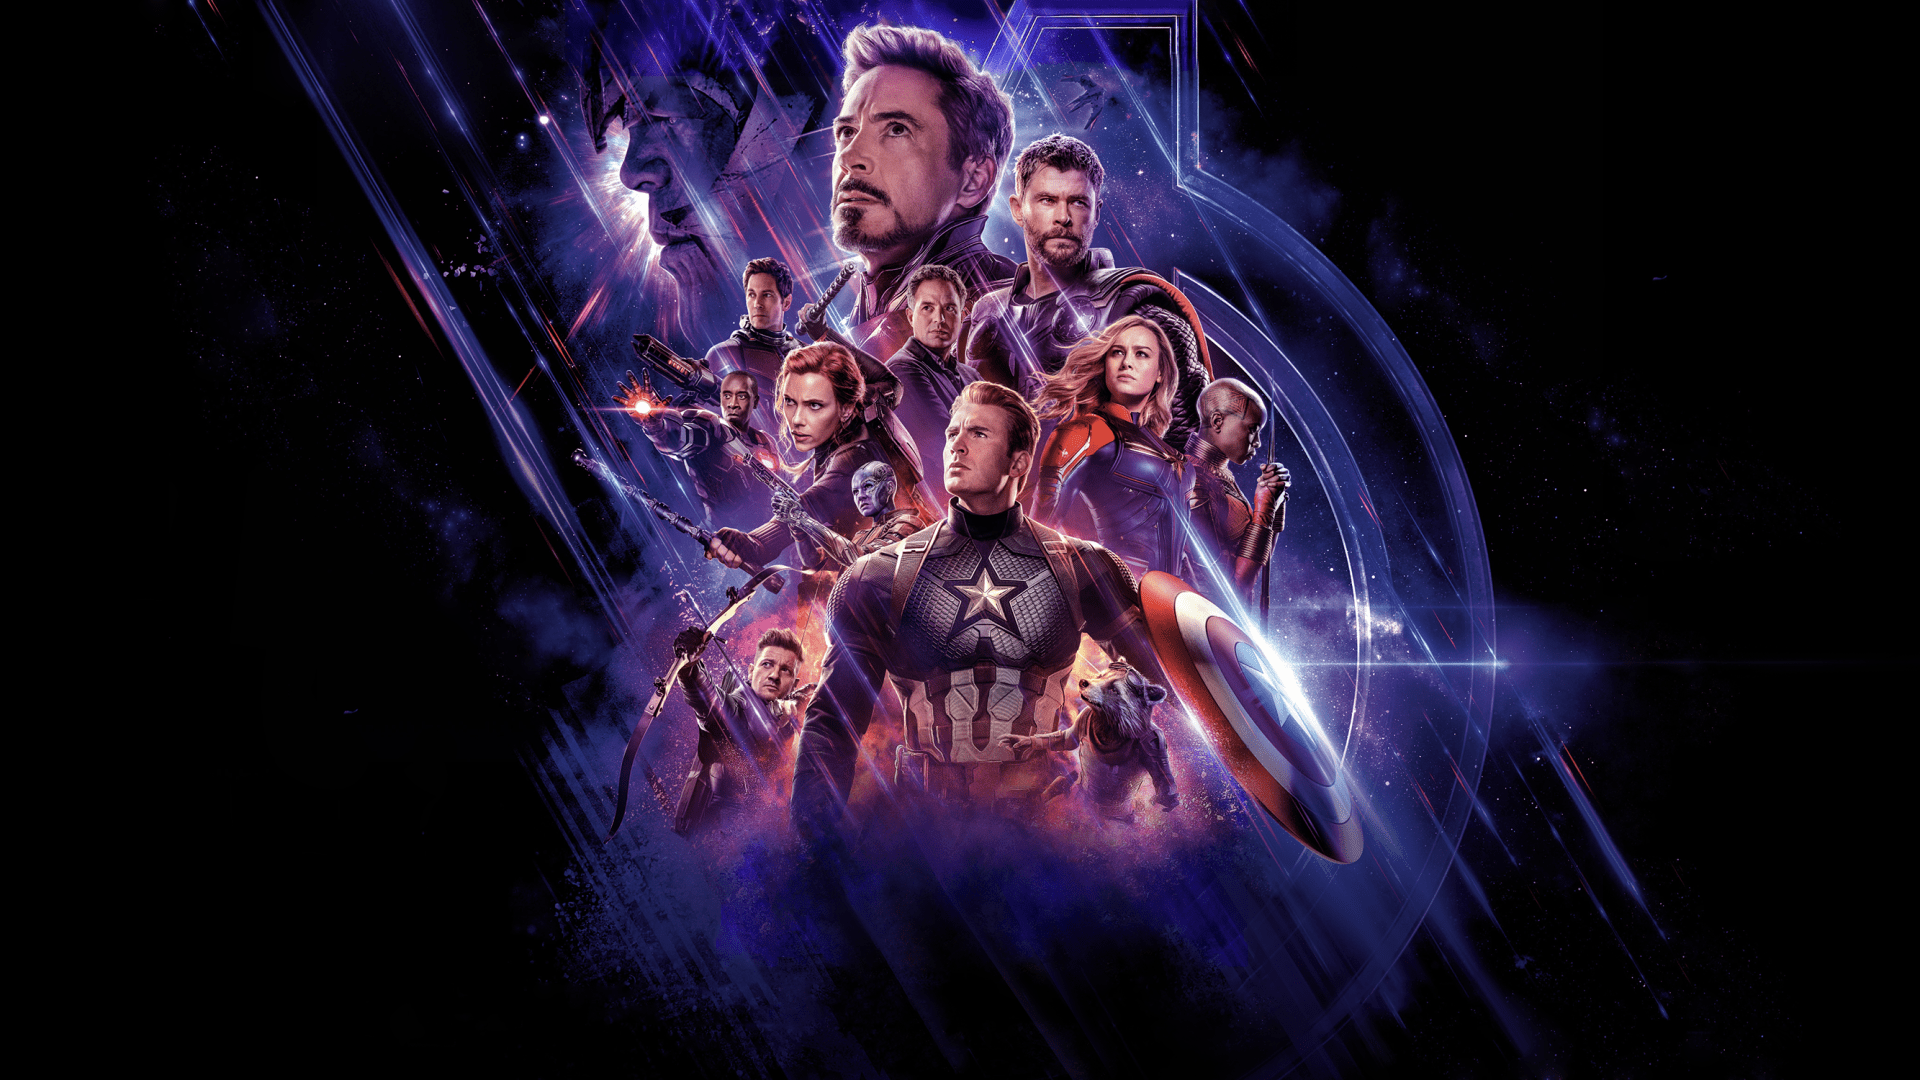 Avengers PC Wallpapers sẽ khiến bạn phát cuồng với sự tinh tế và màu sắc sắc nét của nó. Các nhân vật yêu thích trong phim sẽ xuất hiện trên màn hình của bạn với hình ảnh đầy sức mạnh và uy lực. Với độ phân giải cao, bạn sẽ tận hưởng được những chân dung của các siêu anh hùng này như thể họ thật sự đang hiện diện trước mắt bạn.